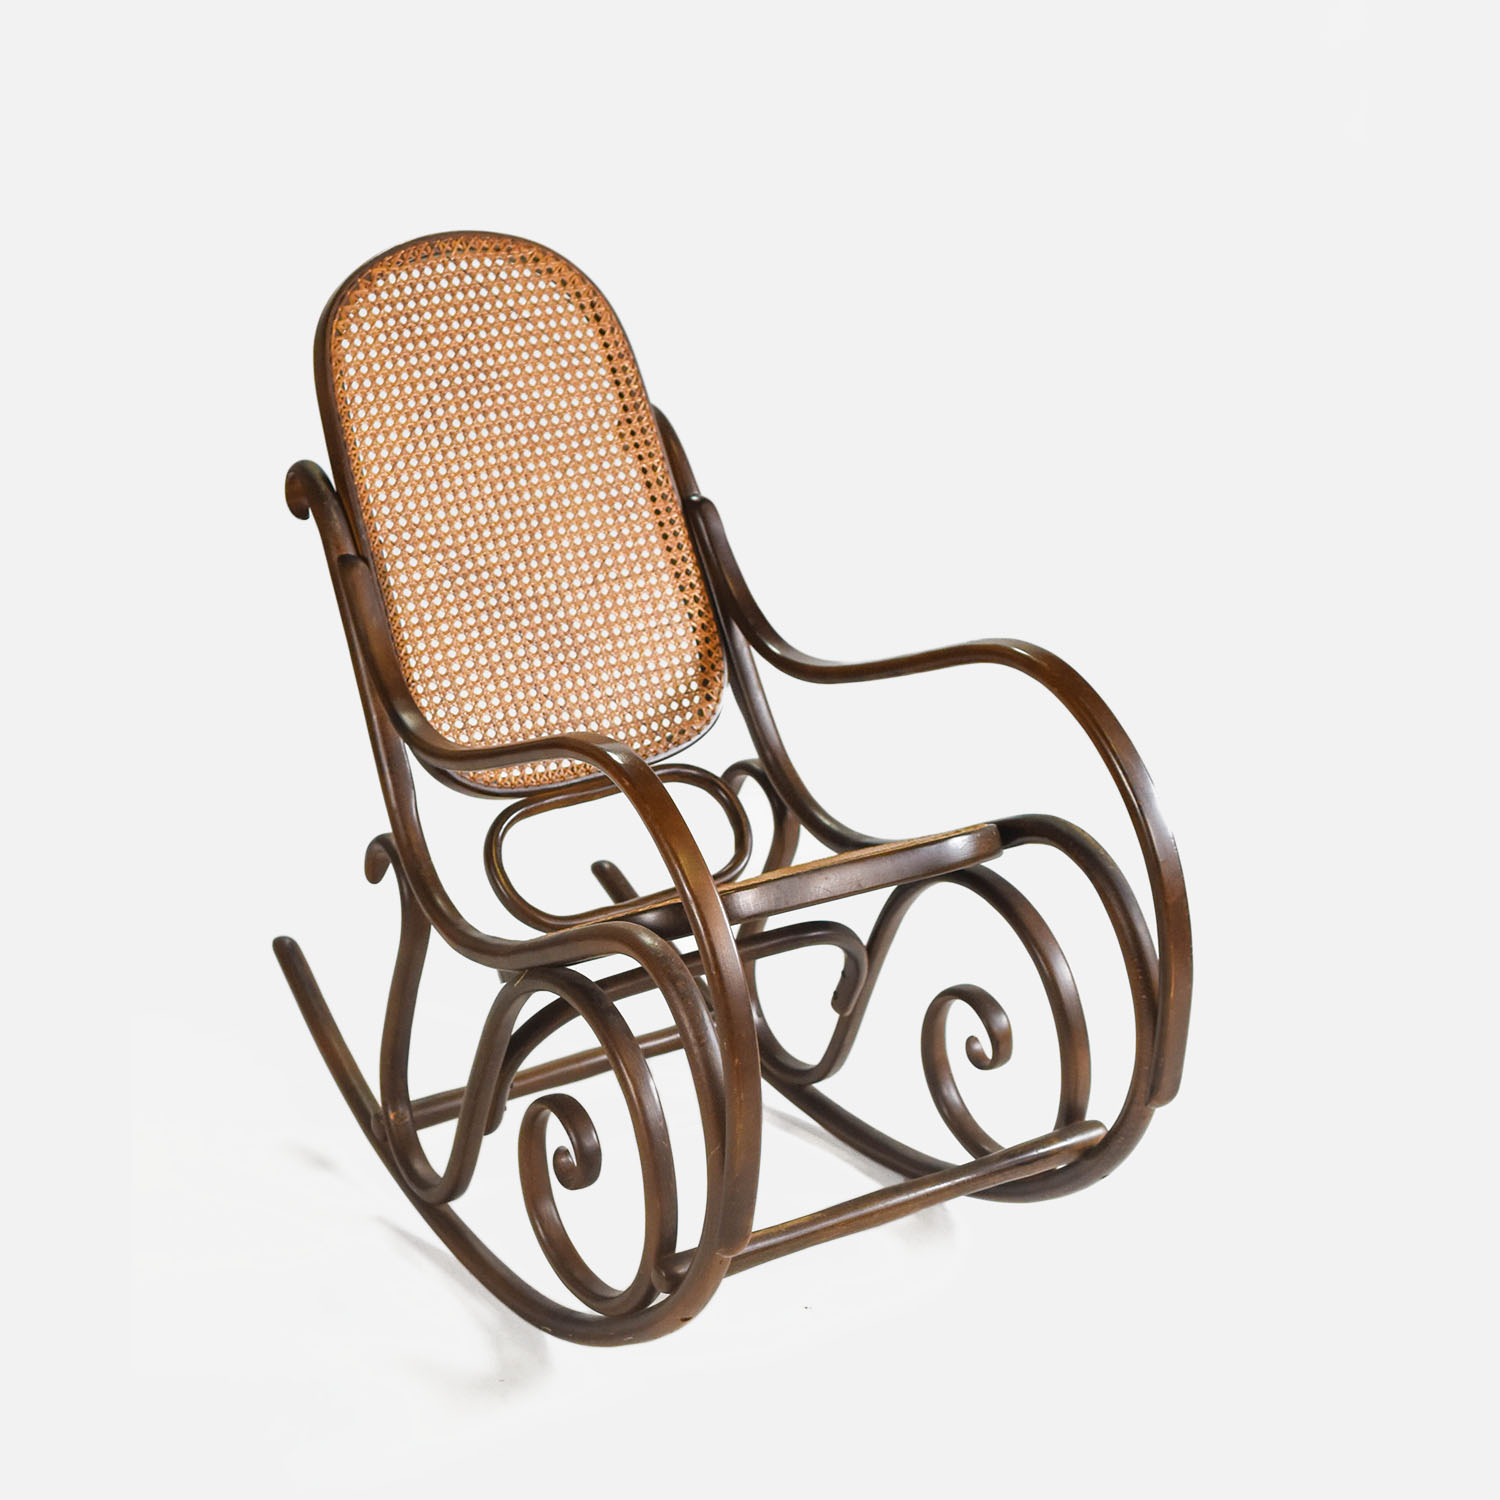 Gebruder Thonet Vienna Bent Wood Rattan Rocking Chair